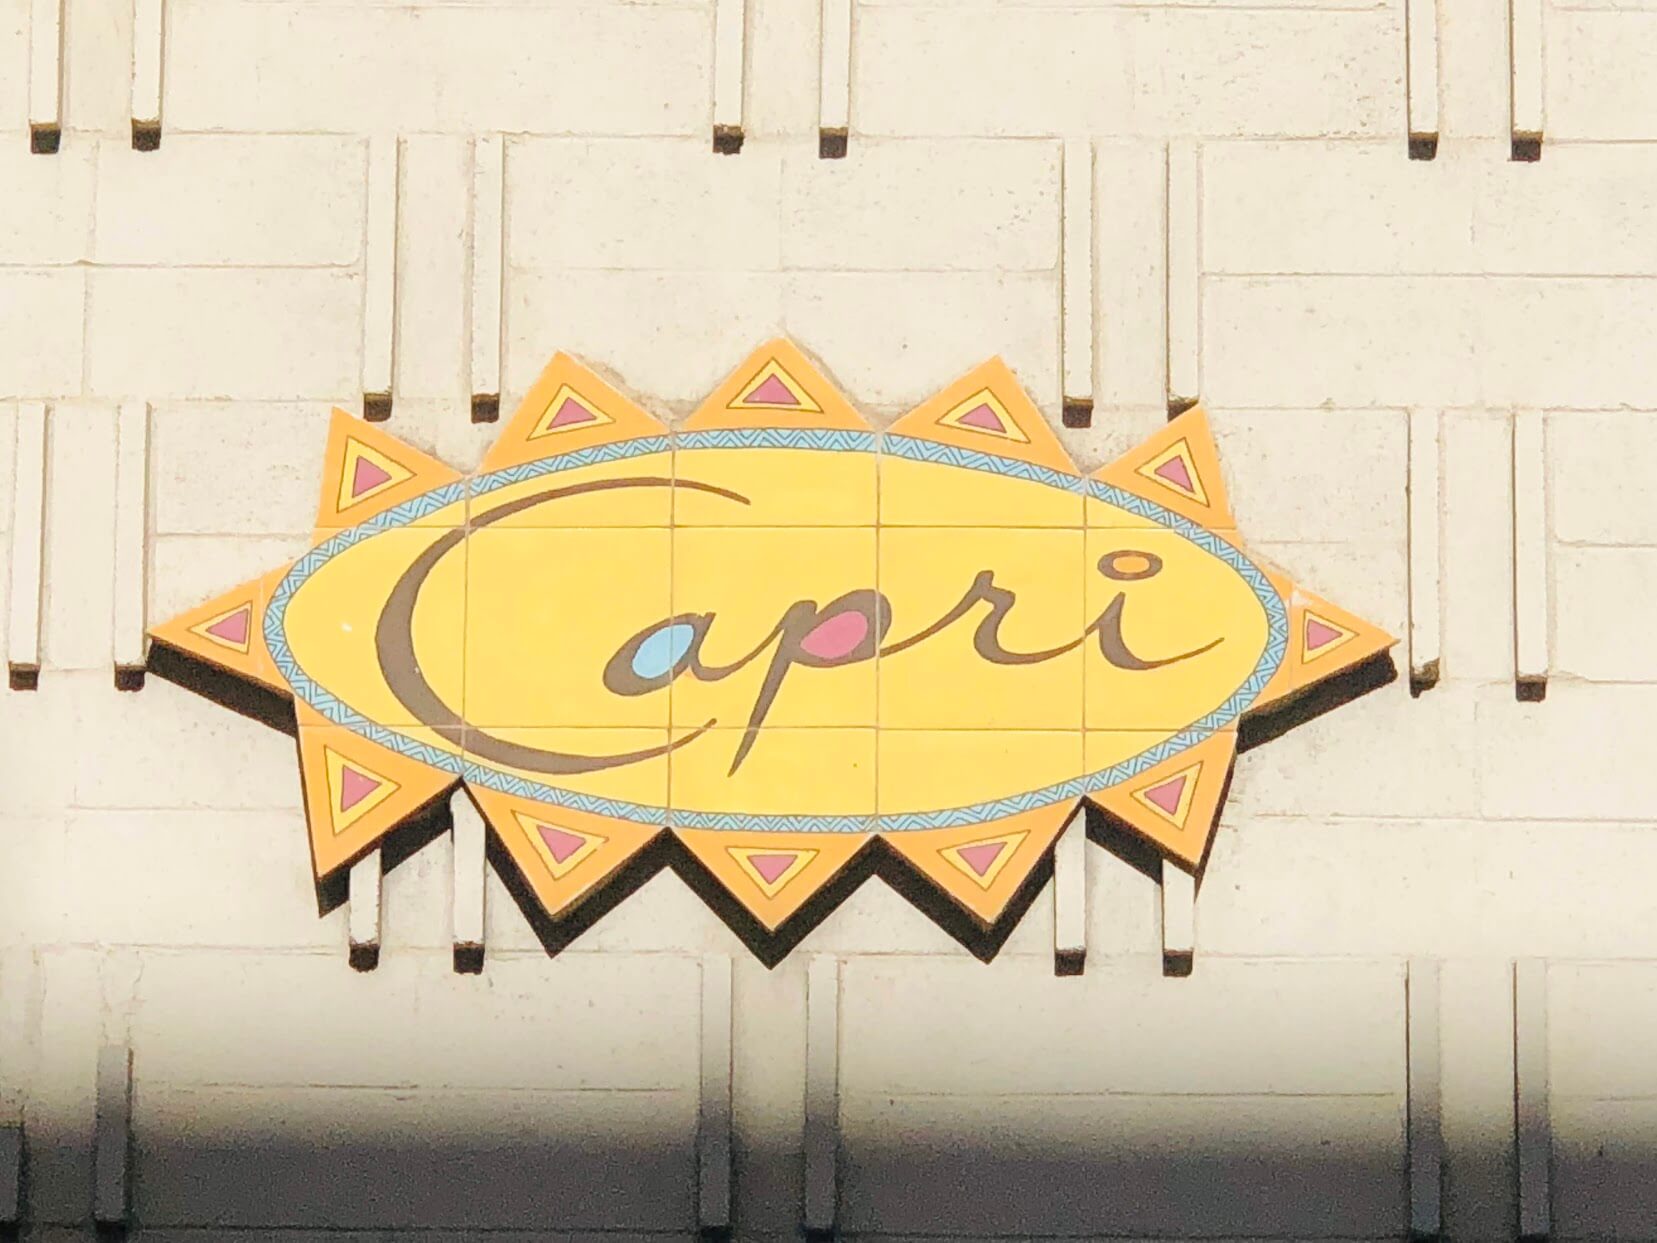 Capri Apartmentsの看板